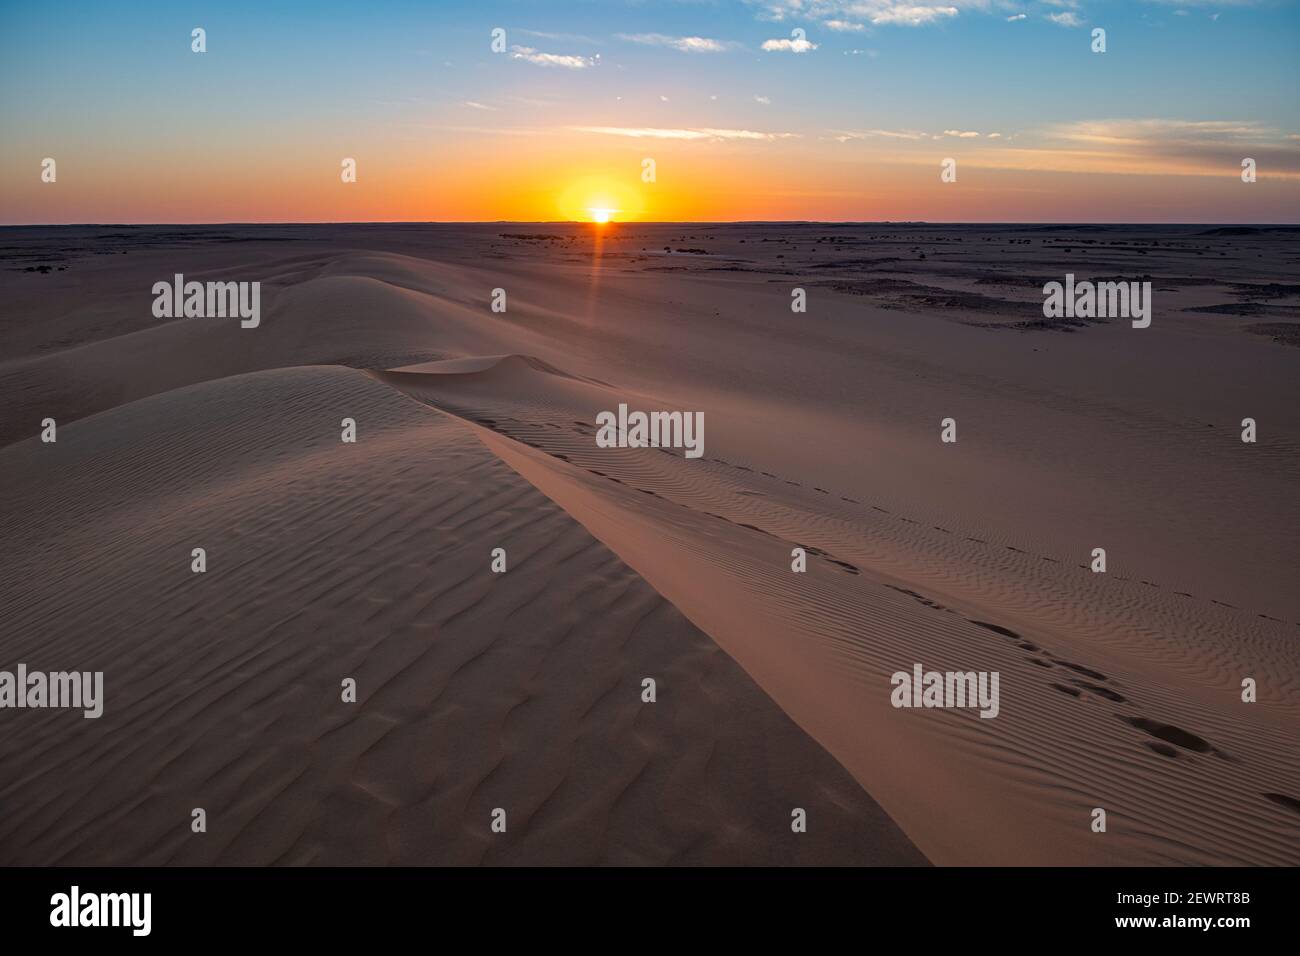 Sunset over the sand dunes, Djado Plateau, Sahara, Niger, Africa Stock Photo